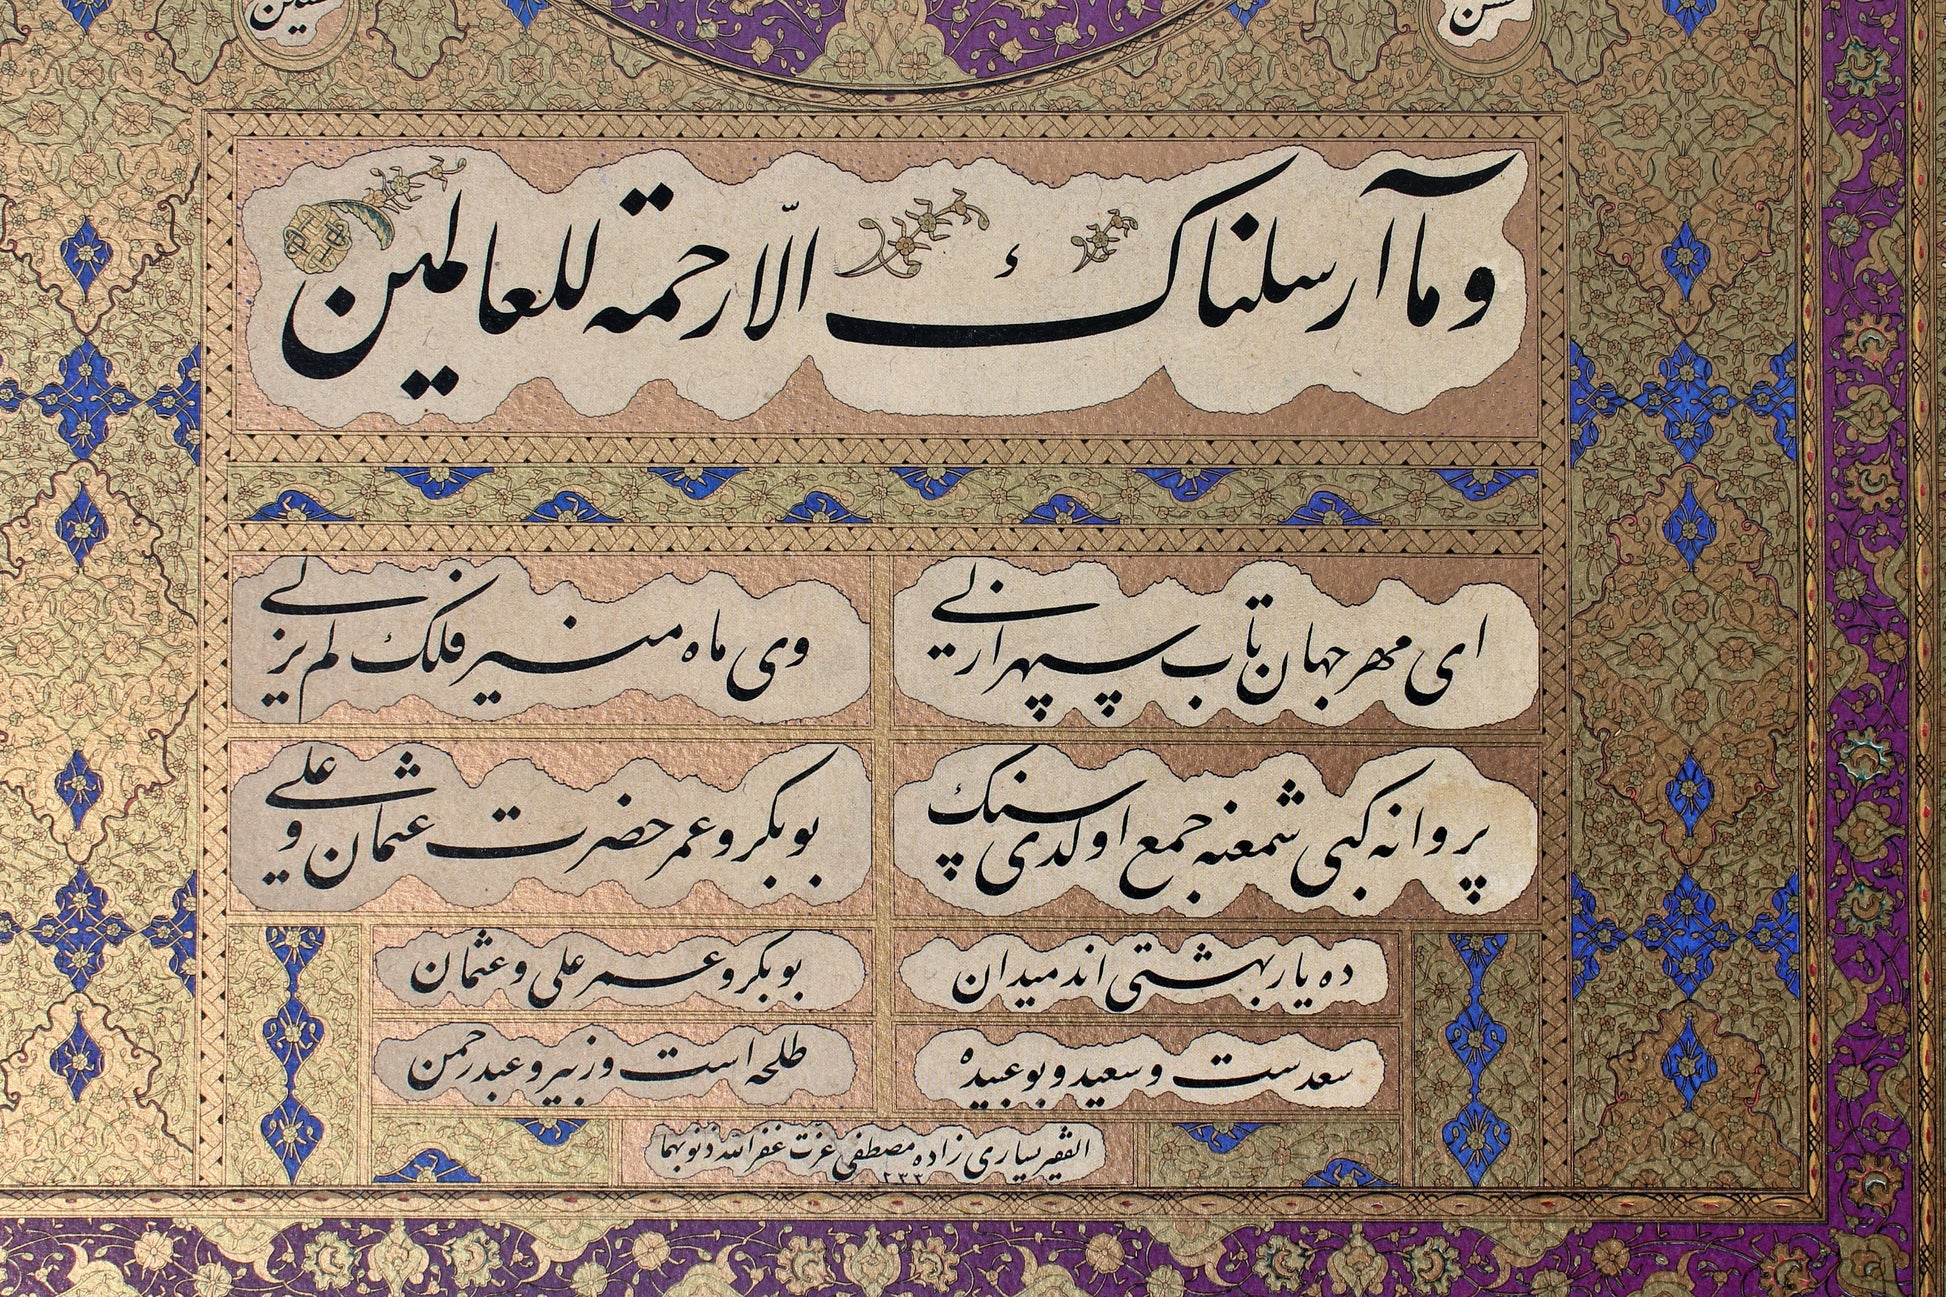 A ḥilye-i şerīf, with Ottoman Turkish interlinear translation